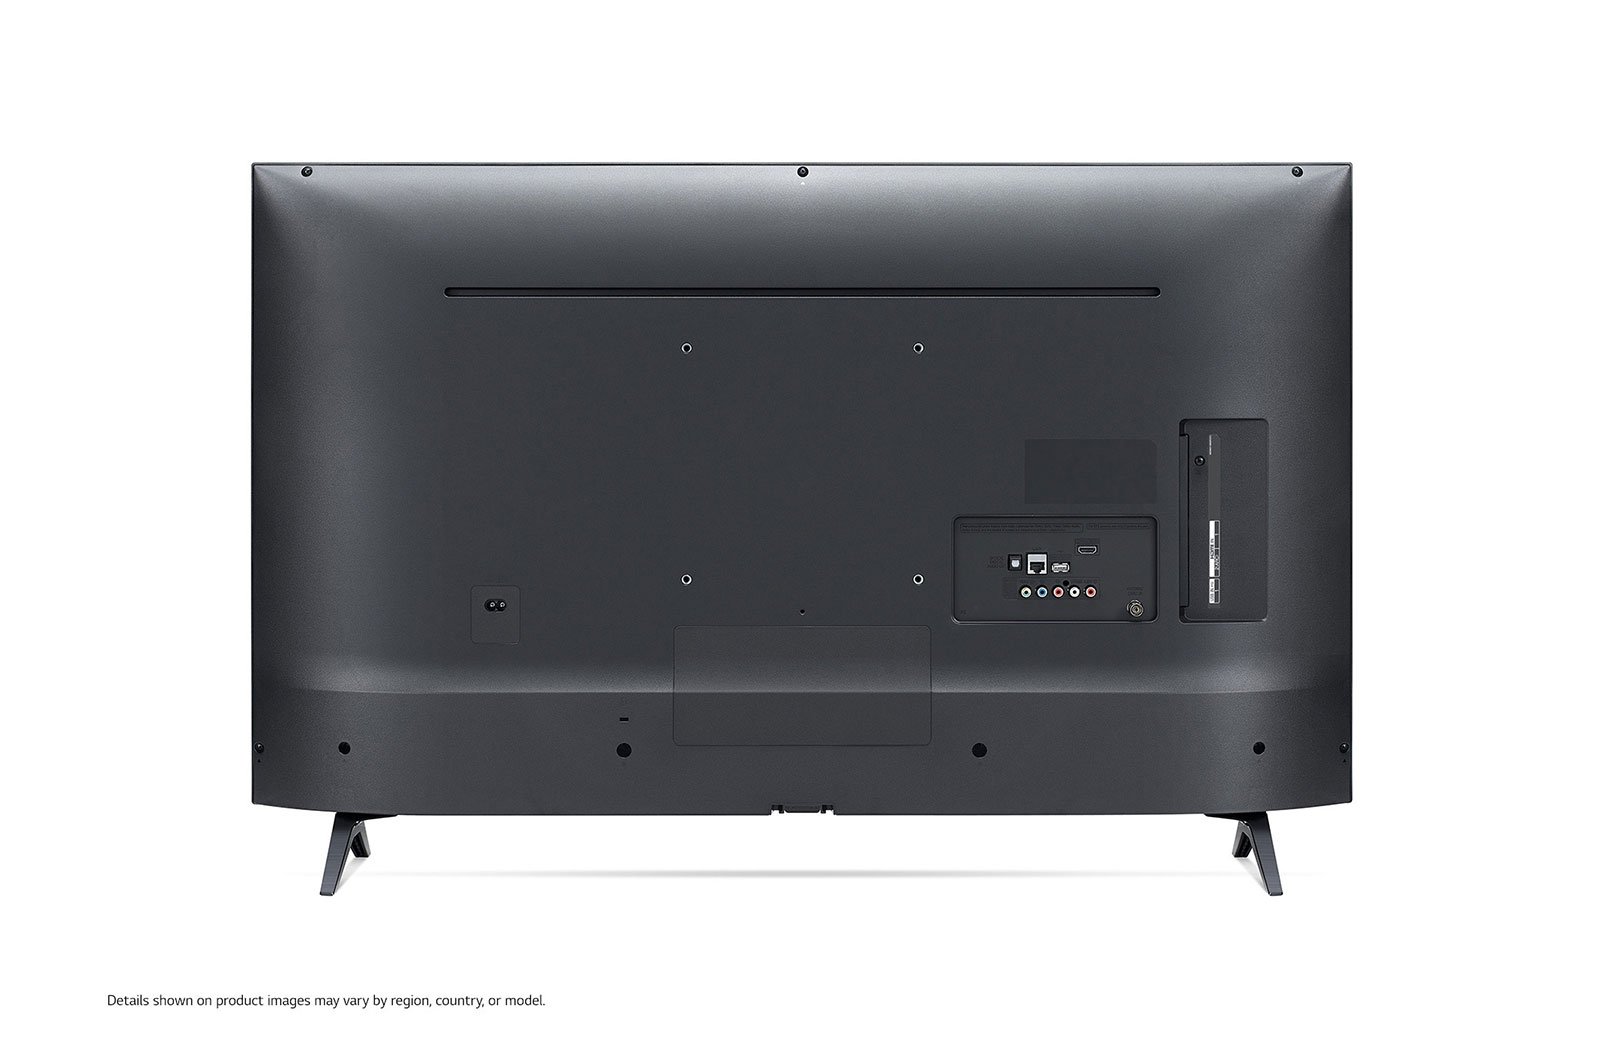 Smart Tivi LED LG 43 inch 43LM5700PTC, Full HD, HDR